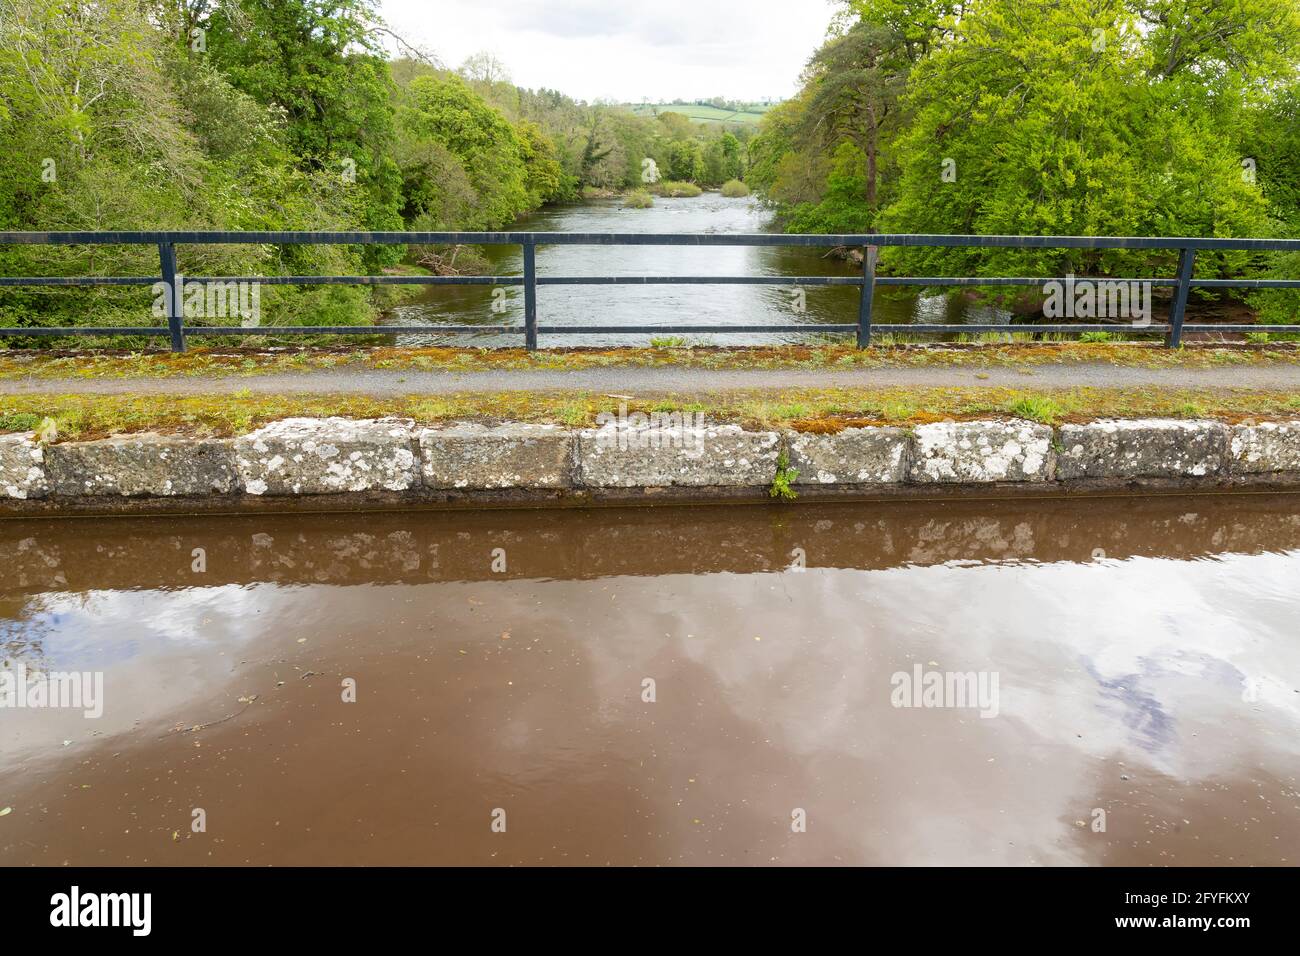 Río Usk, visto desde el acueducto de Brynich, cerca de Brecon en el Canal de Monmouthshire y Brecon, Powys, Gales, Reino Unido Foto de stock